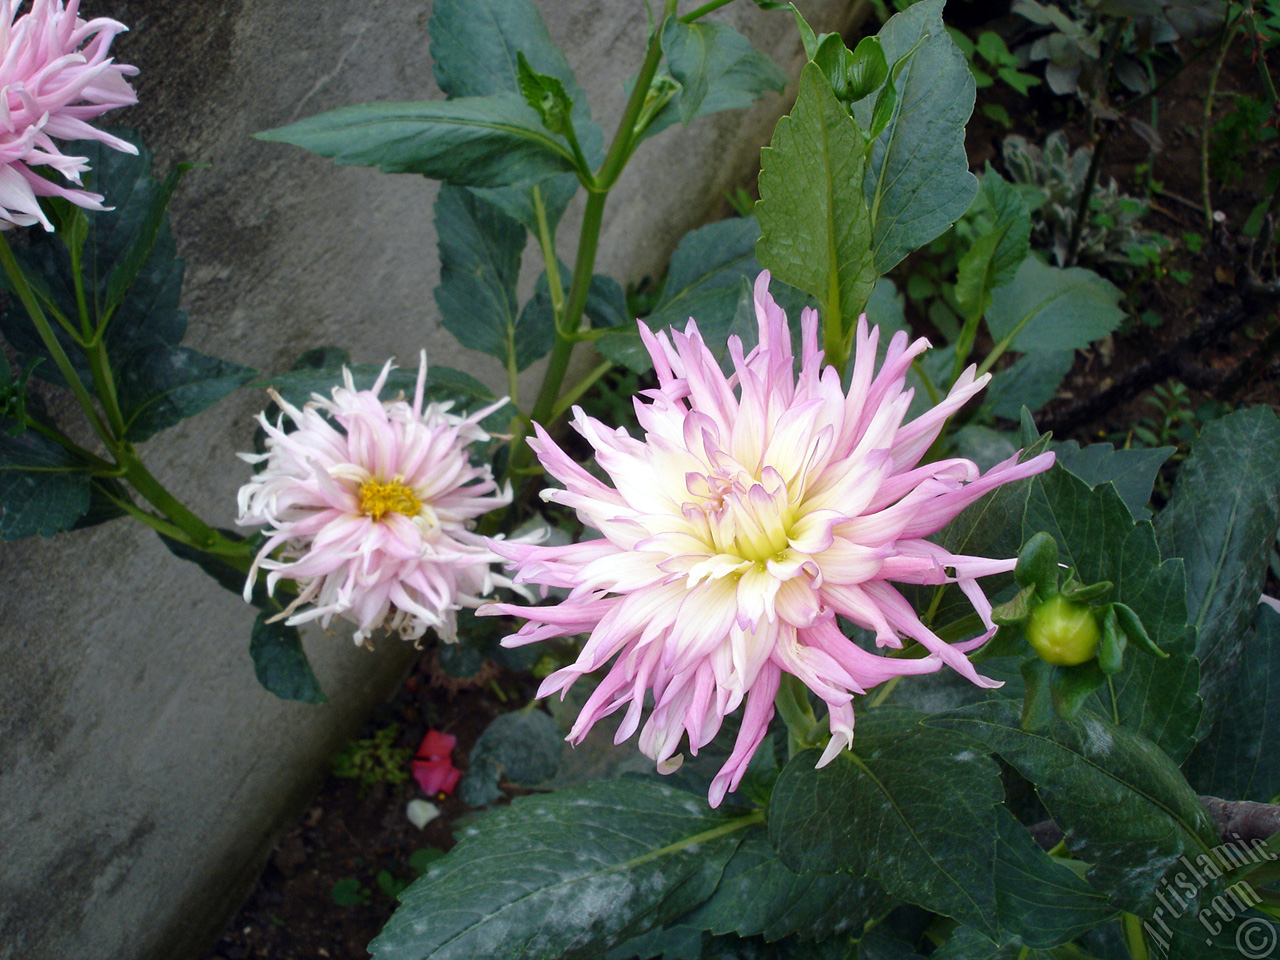 Dahlia flower.
